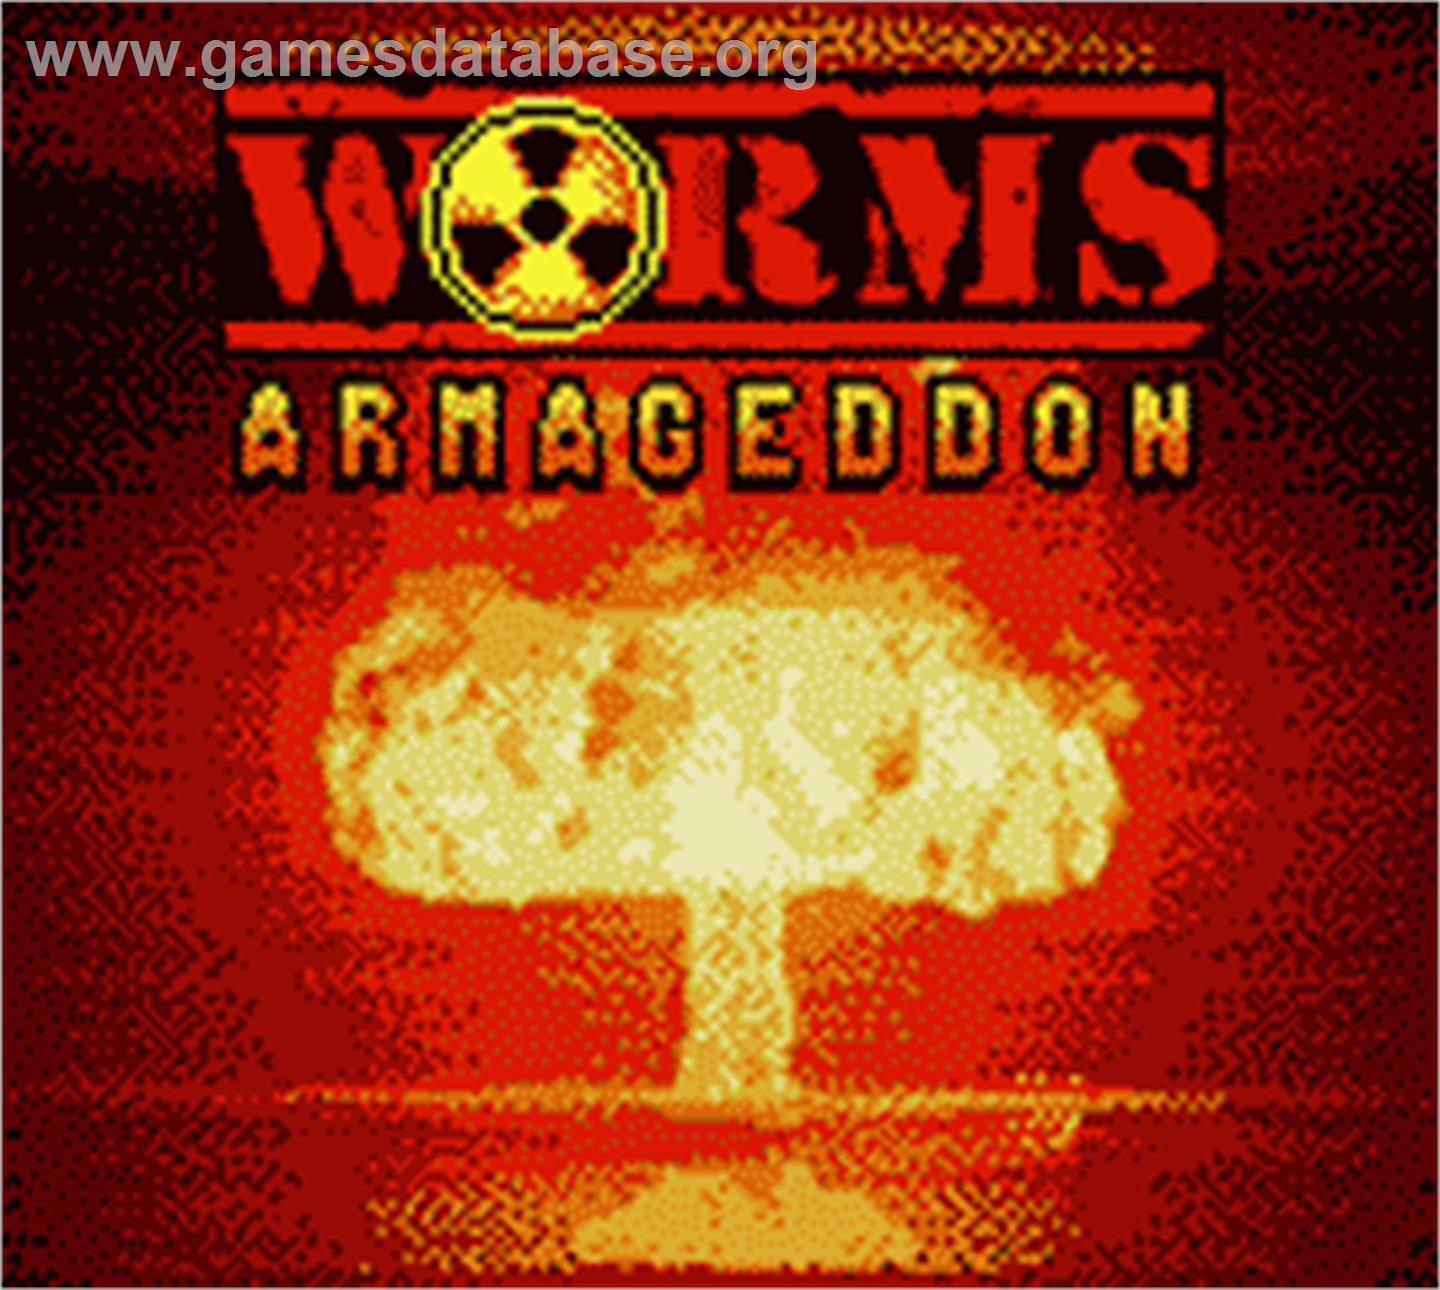 Worms Armageddon - Nintendo Game Boy Color - Artwork - Title Screen